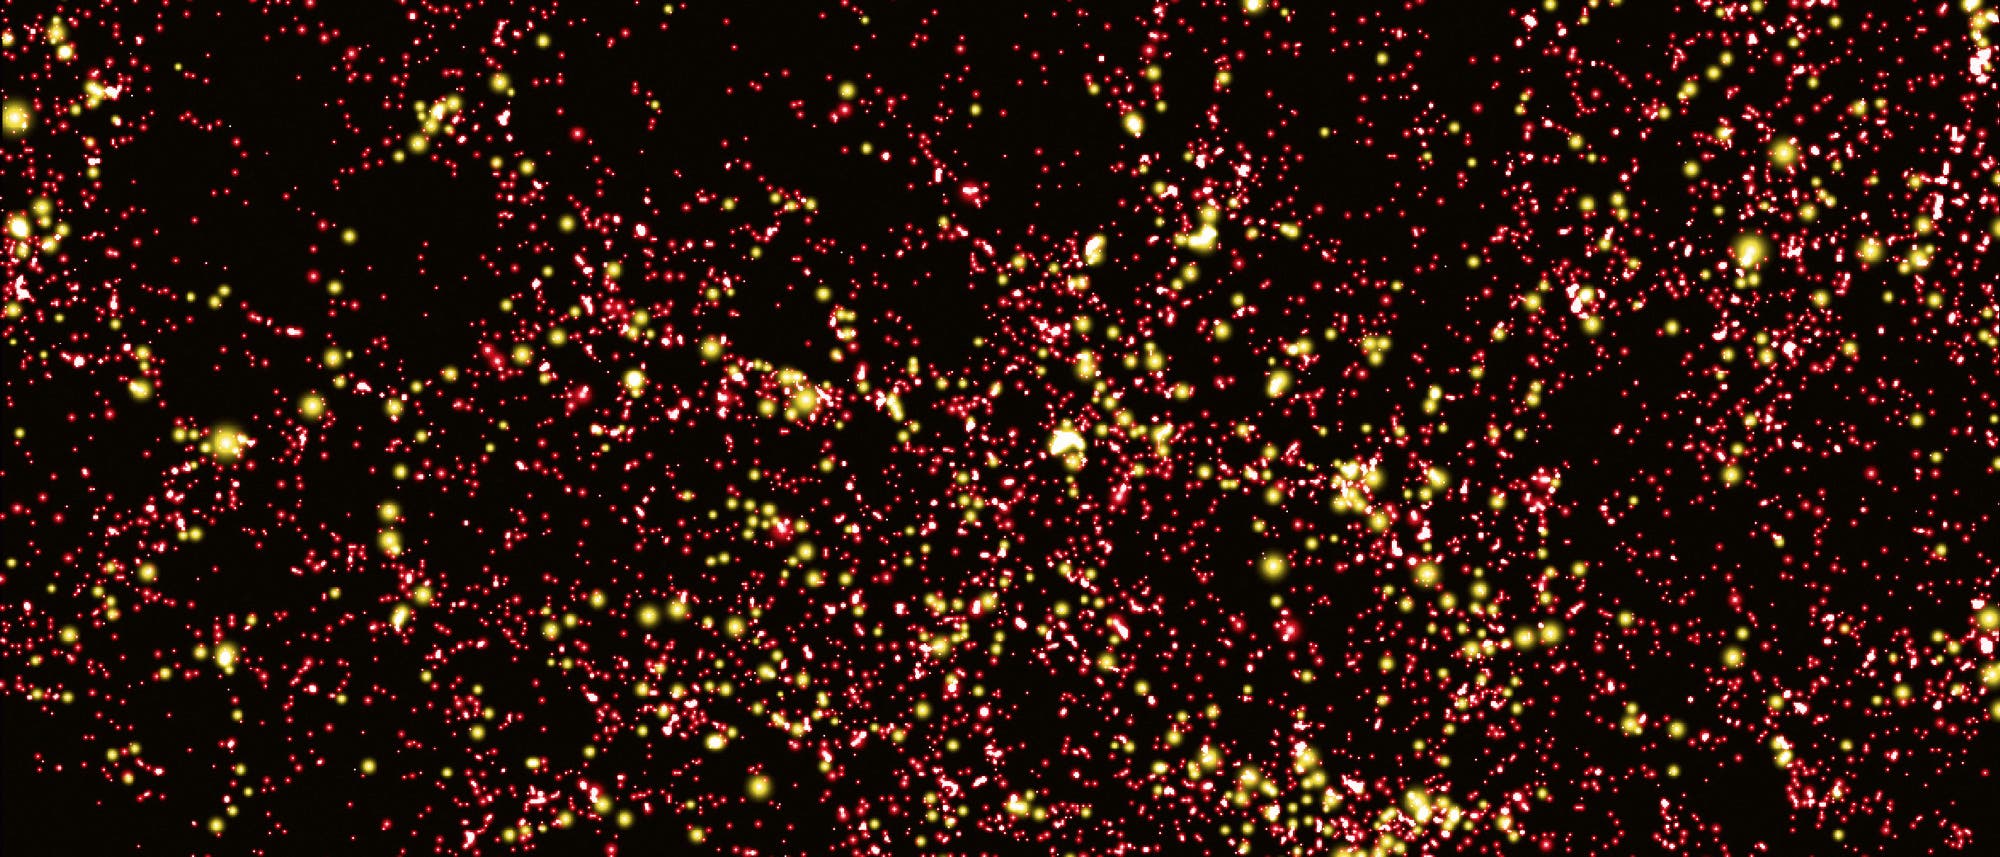 Eine Simulation zeigt die Verteilung der Dunklen Materie im frühen Universum. Große Anhäufungen Dunkler Materie sind rot dargestellt, Konzentrationen mit mehr als 300 Millionen Sonnenmassen gelb.